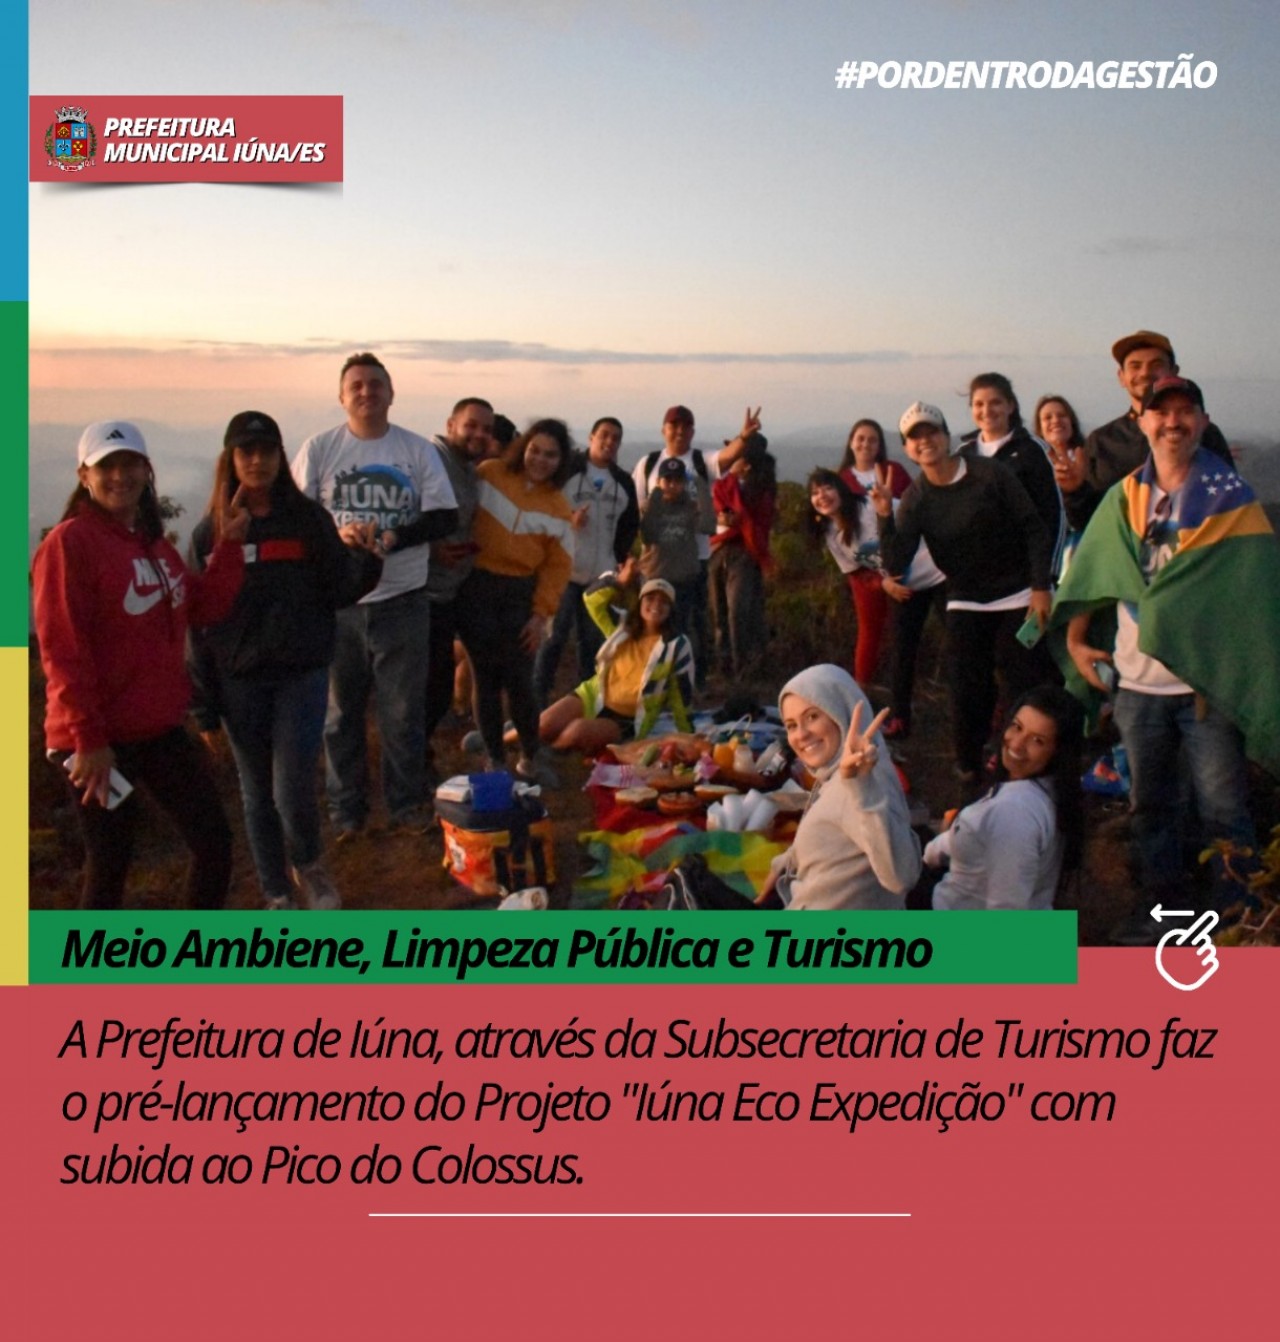 Subsecretaria de Turismo faz o pré-lançamento do Projeto "Iúna Eco Expedição" com subida ao Pico do Colossus